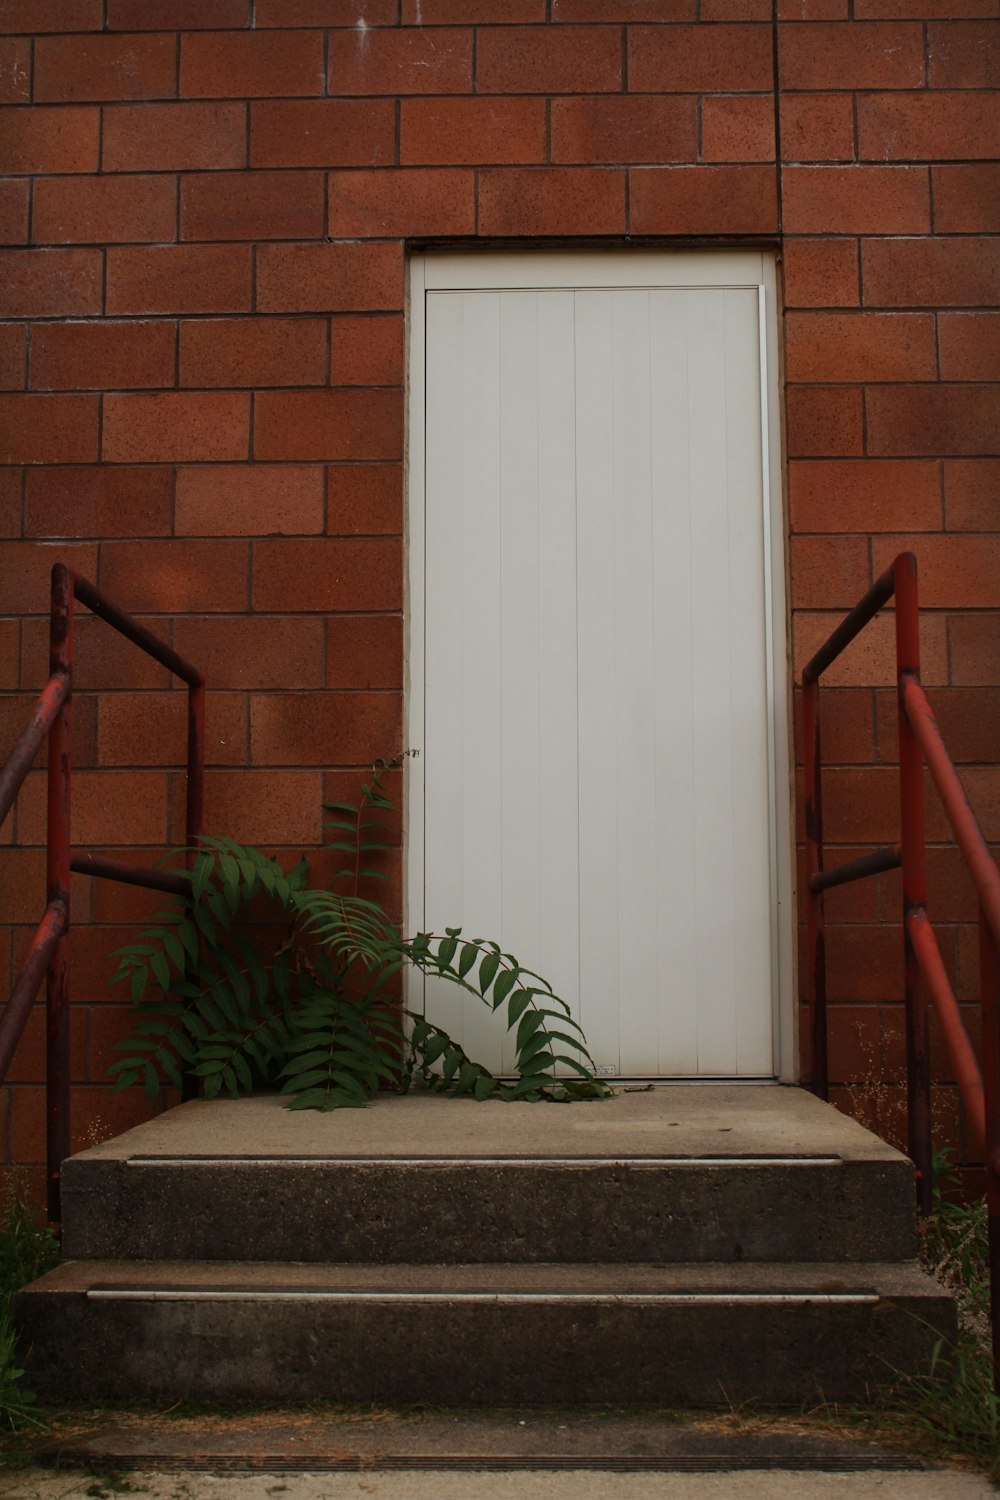 green plant beside white wooden door